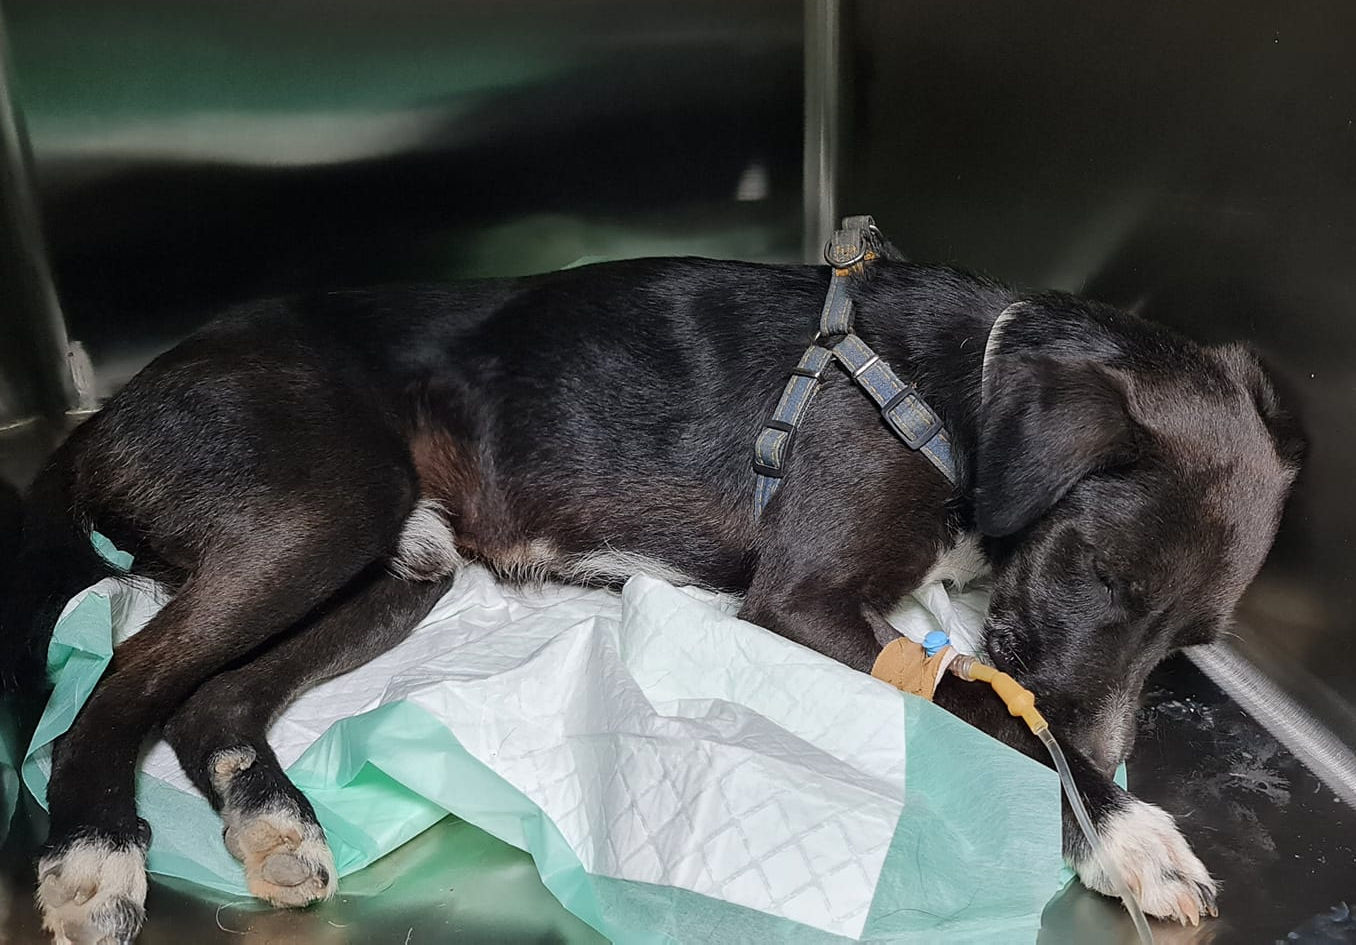 Νέο περιστατικό κτηνωδίας: Είχαν δέσει γεννητικά όργανα σκύλου με tie wrap -Σοκαριστικές εικόνες